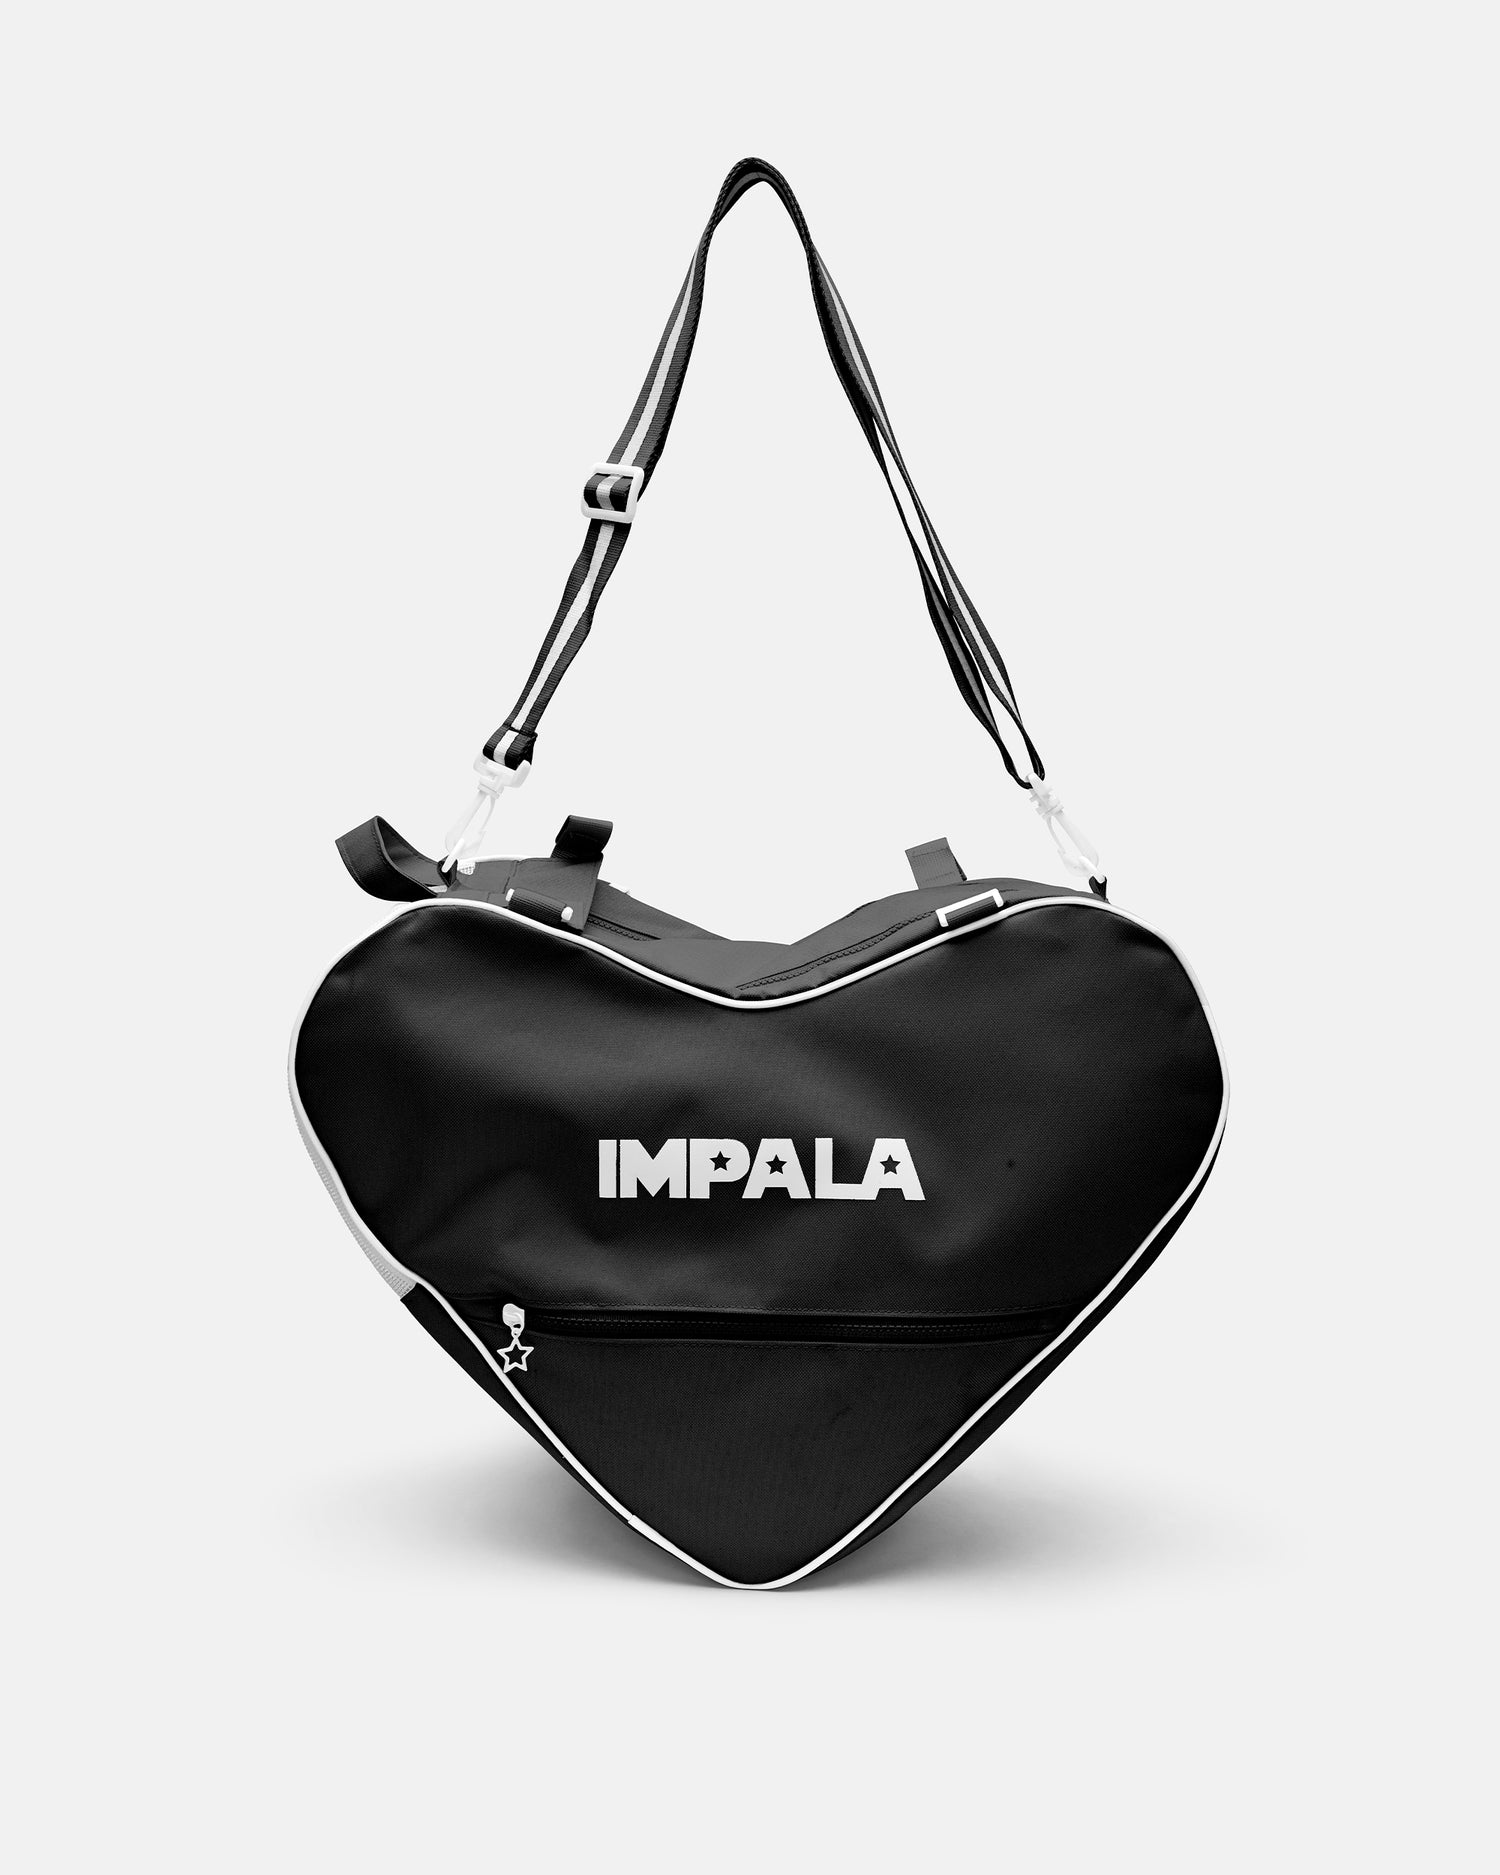 Impala Skate Bag - Black